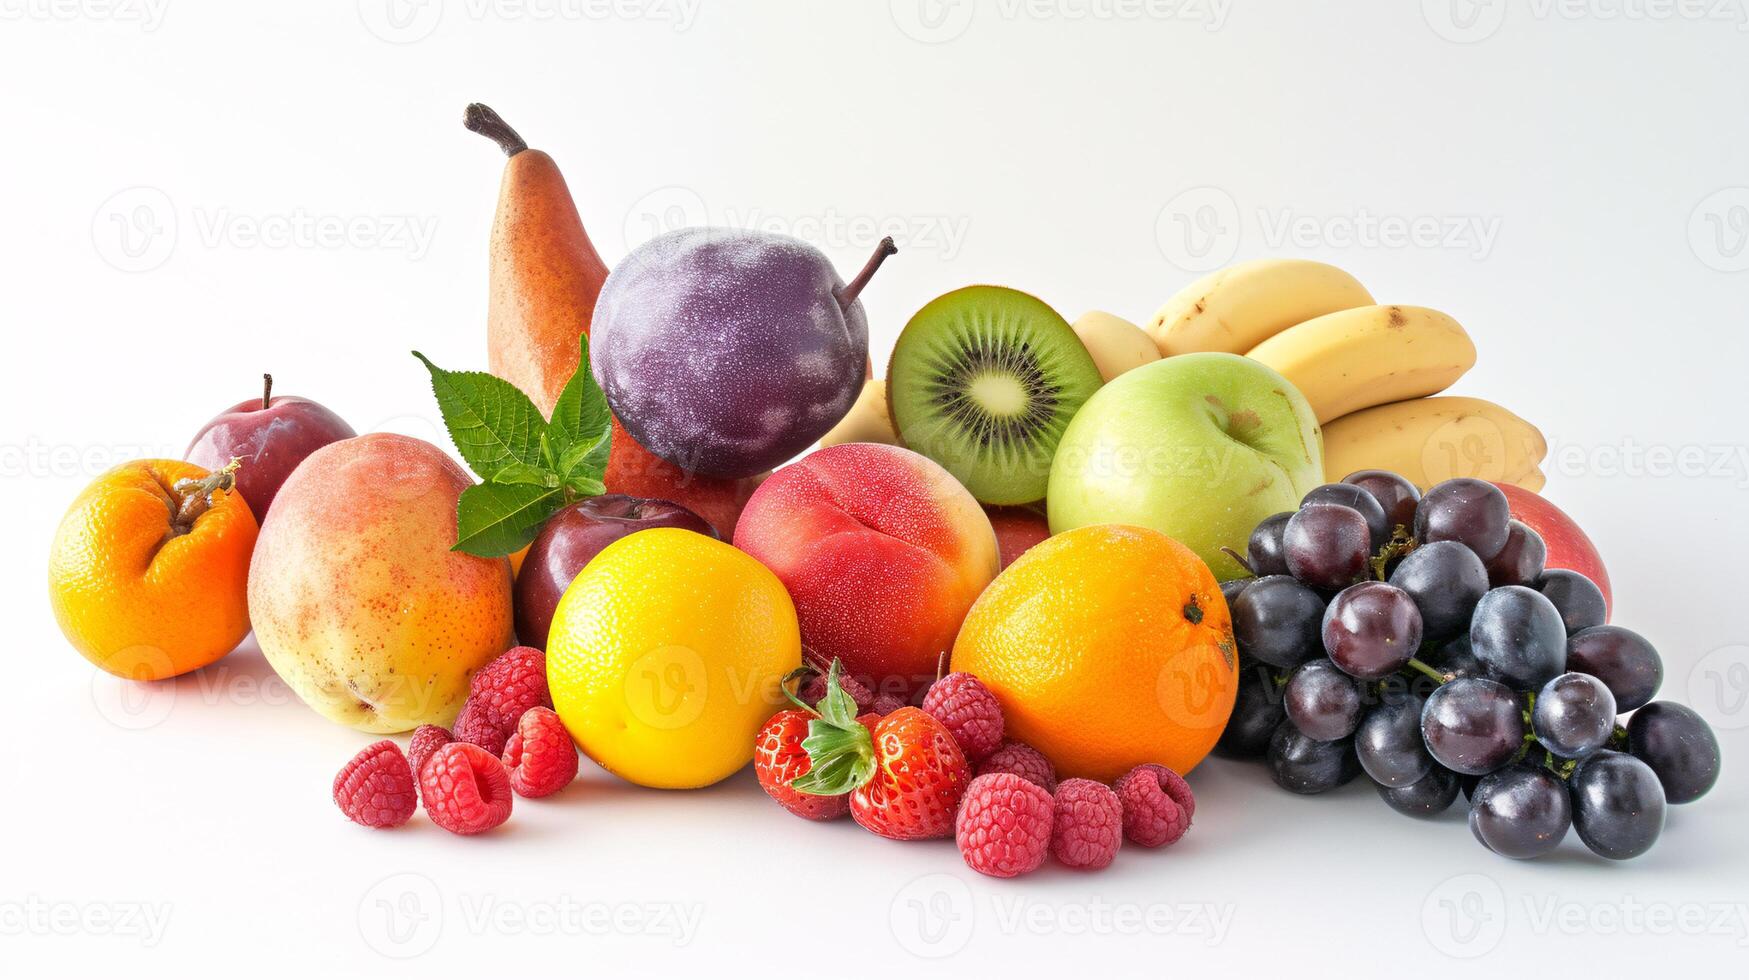 uma generoso seleção do fresco, vibrante frutas estão espalhados artisticamente em a imaculado branco fundo foto